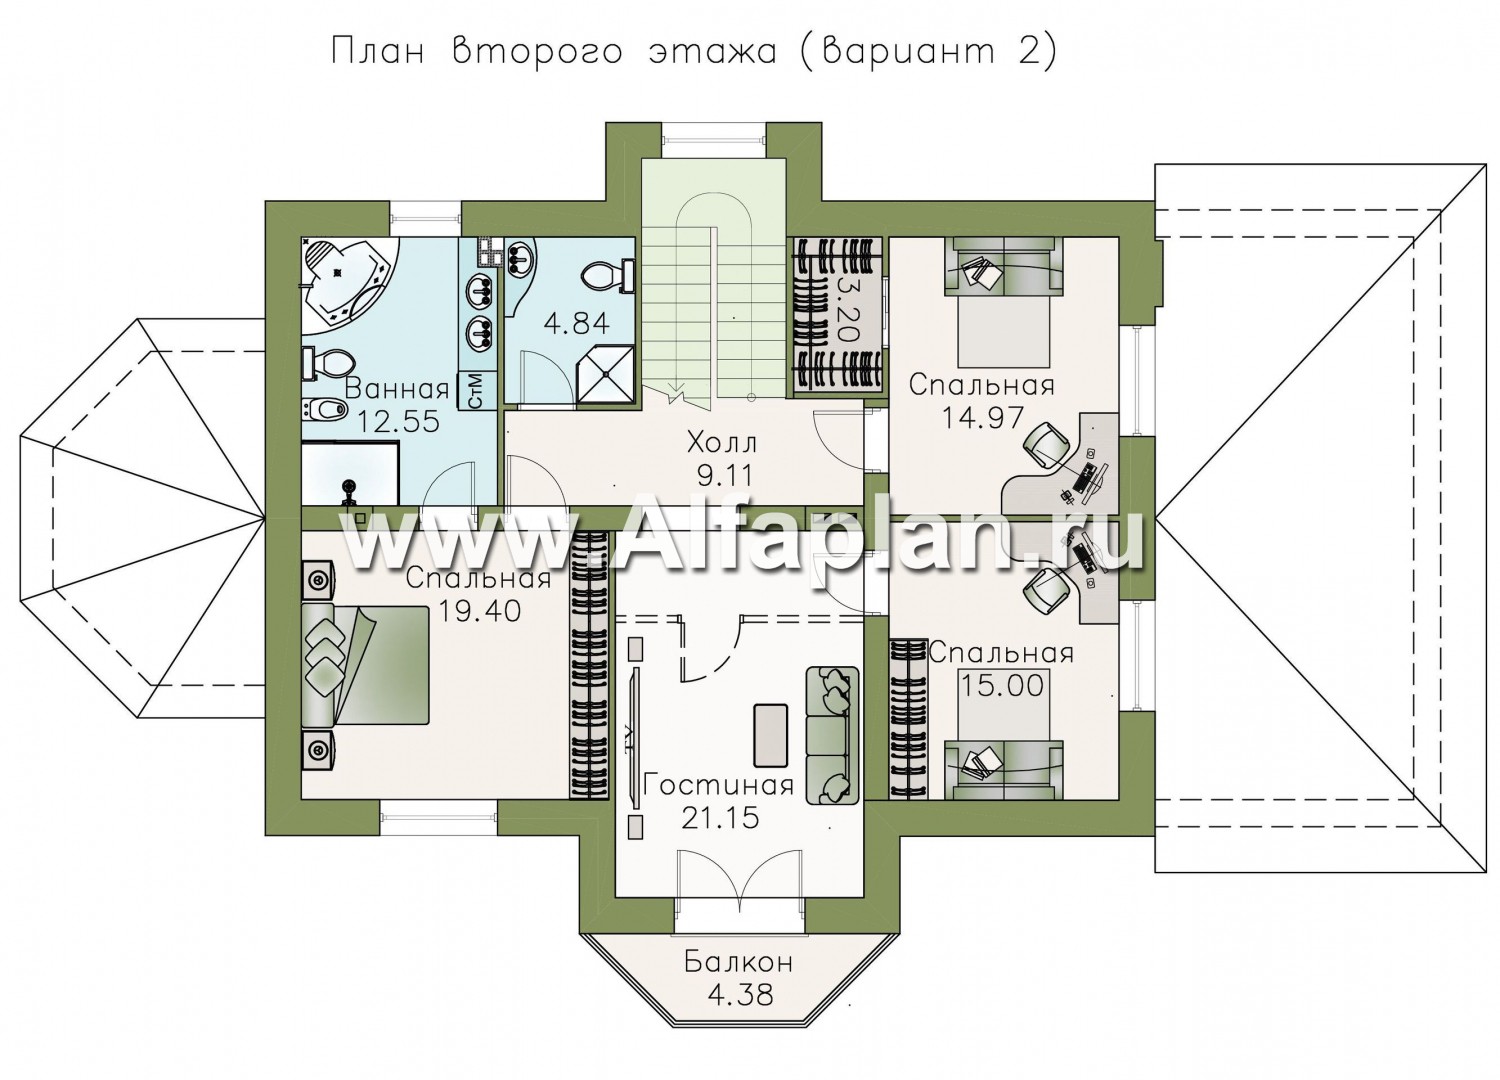 Проекты домов Альфаплан - «Ясная поляна» - удобный коттедж для большой семьи - план проекта №3